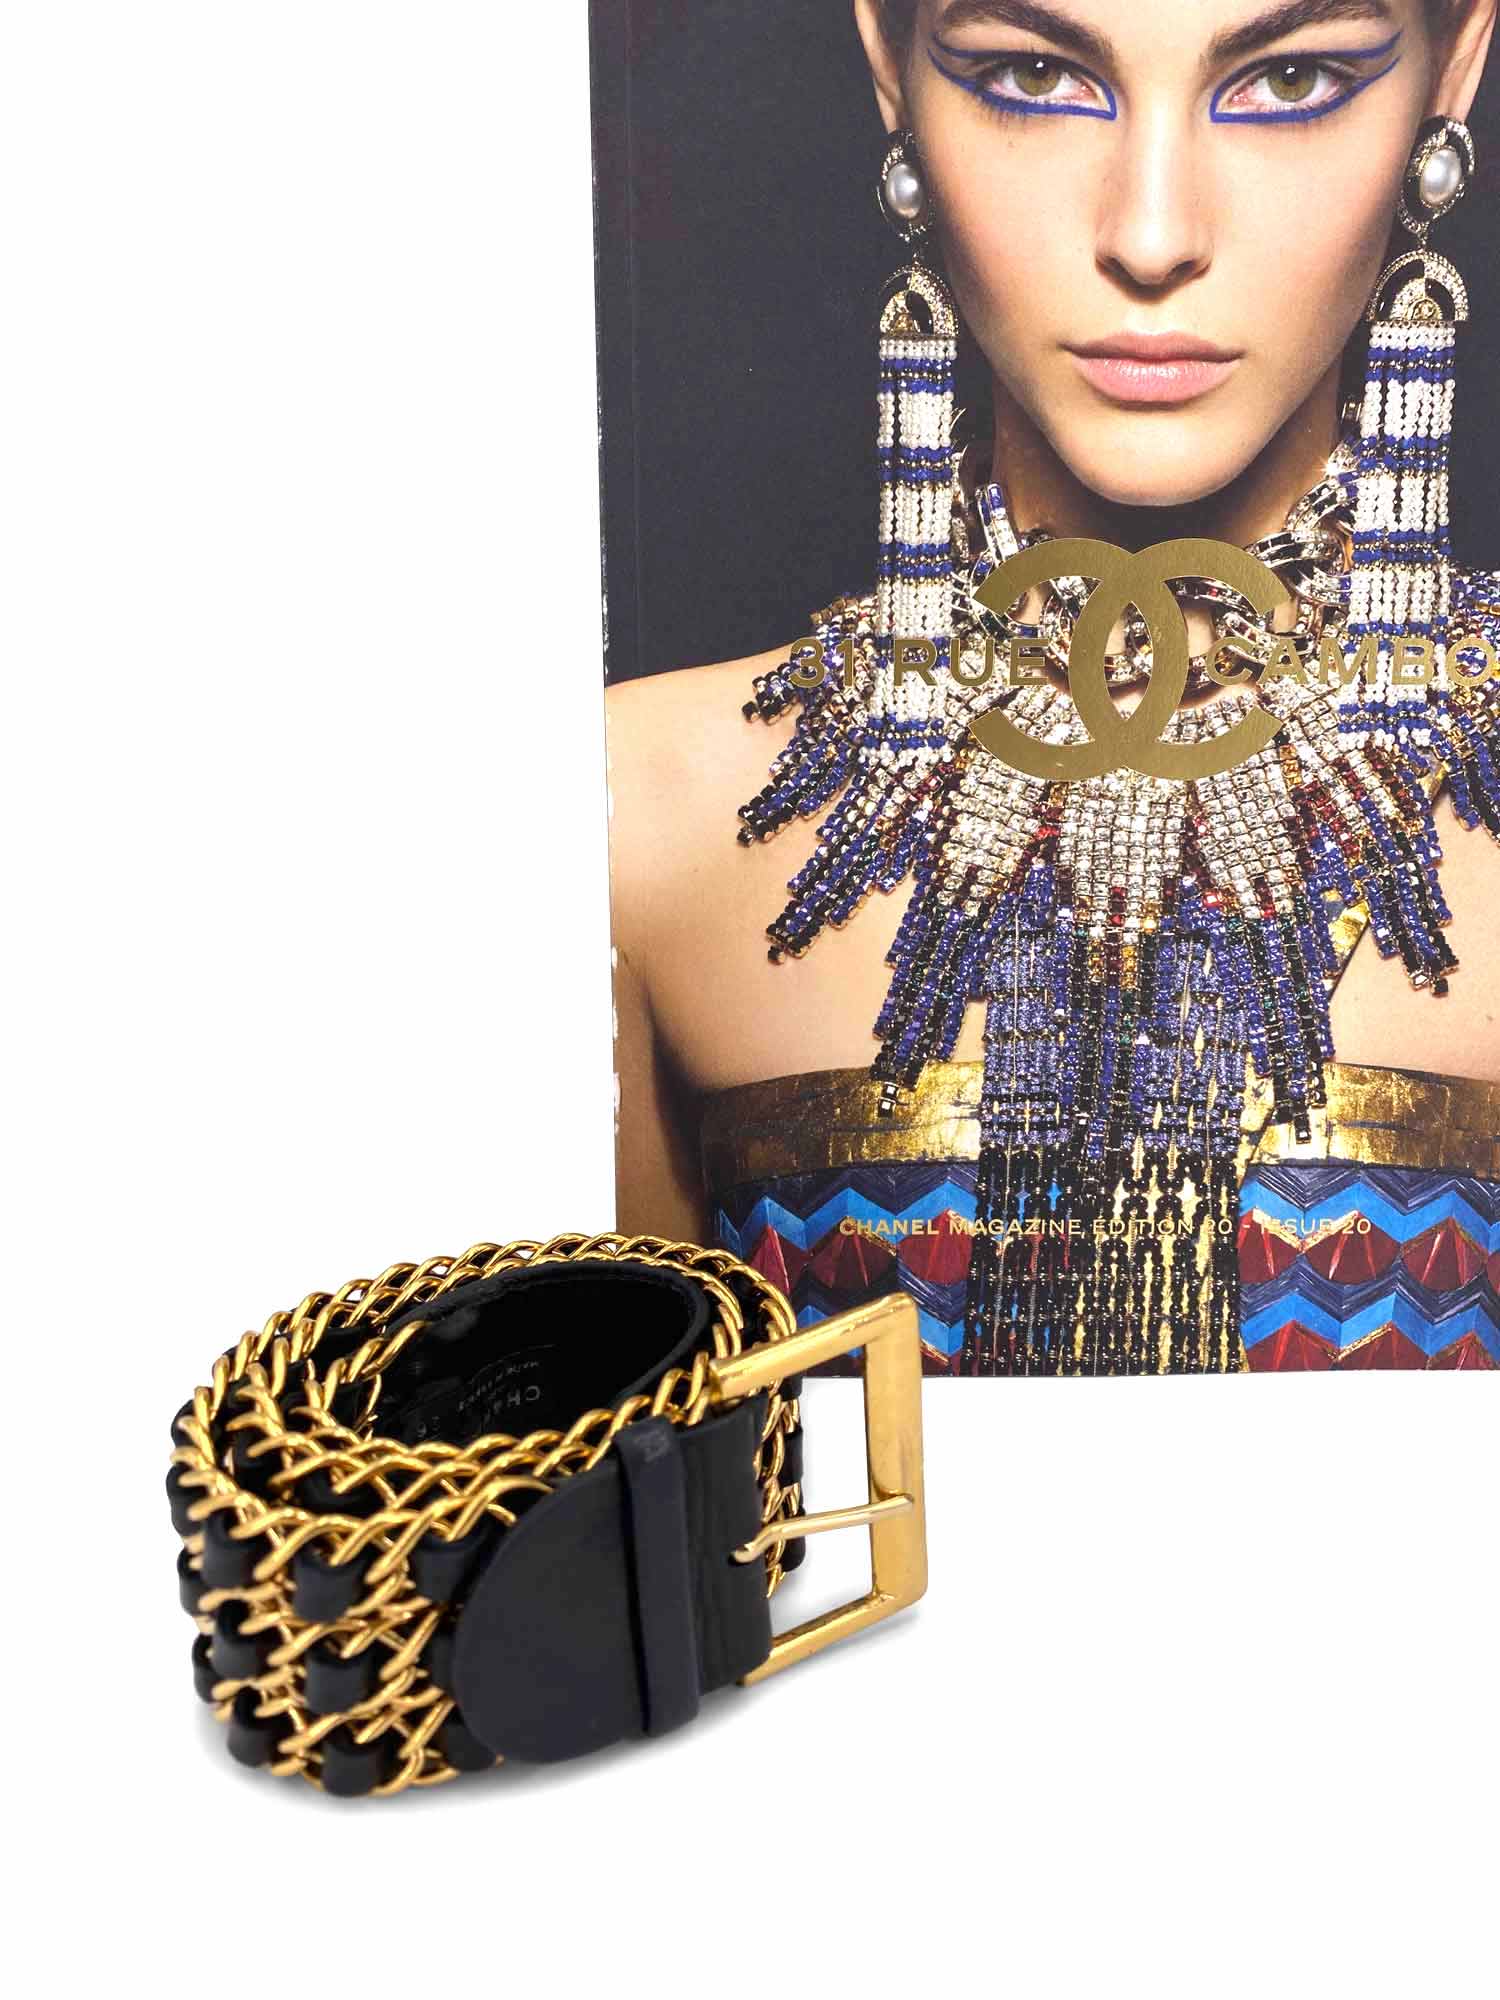 CHANEL Vintage Leather Gold Chain Link Belt Black-designer resale